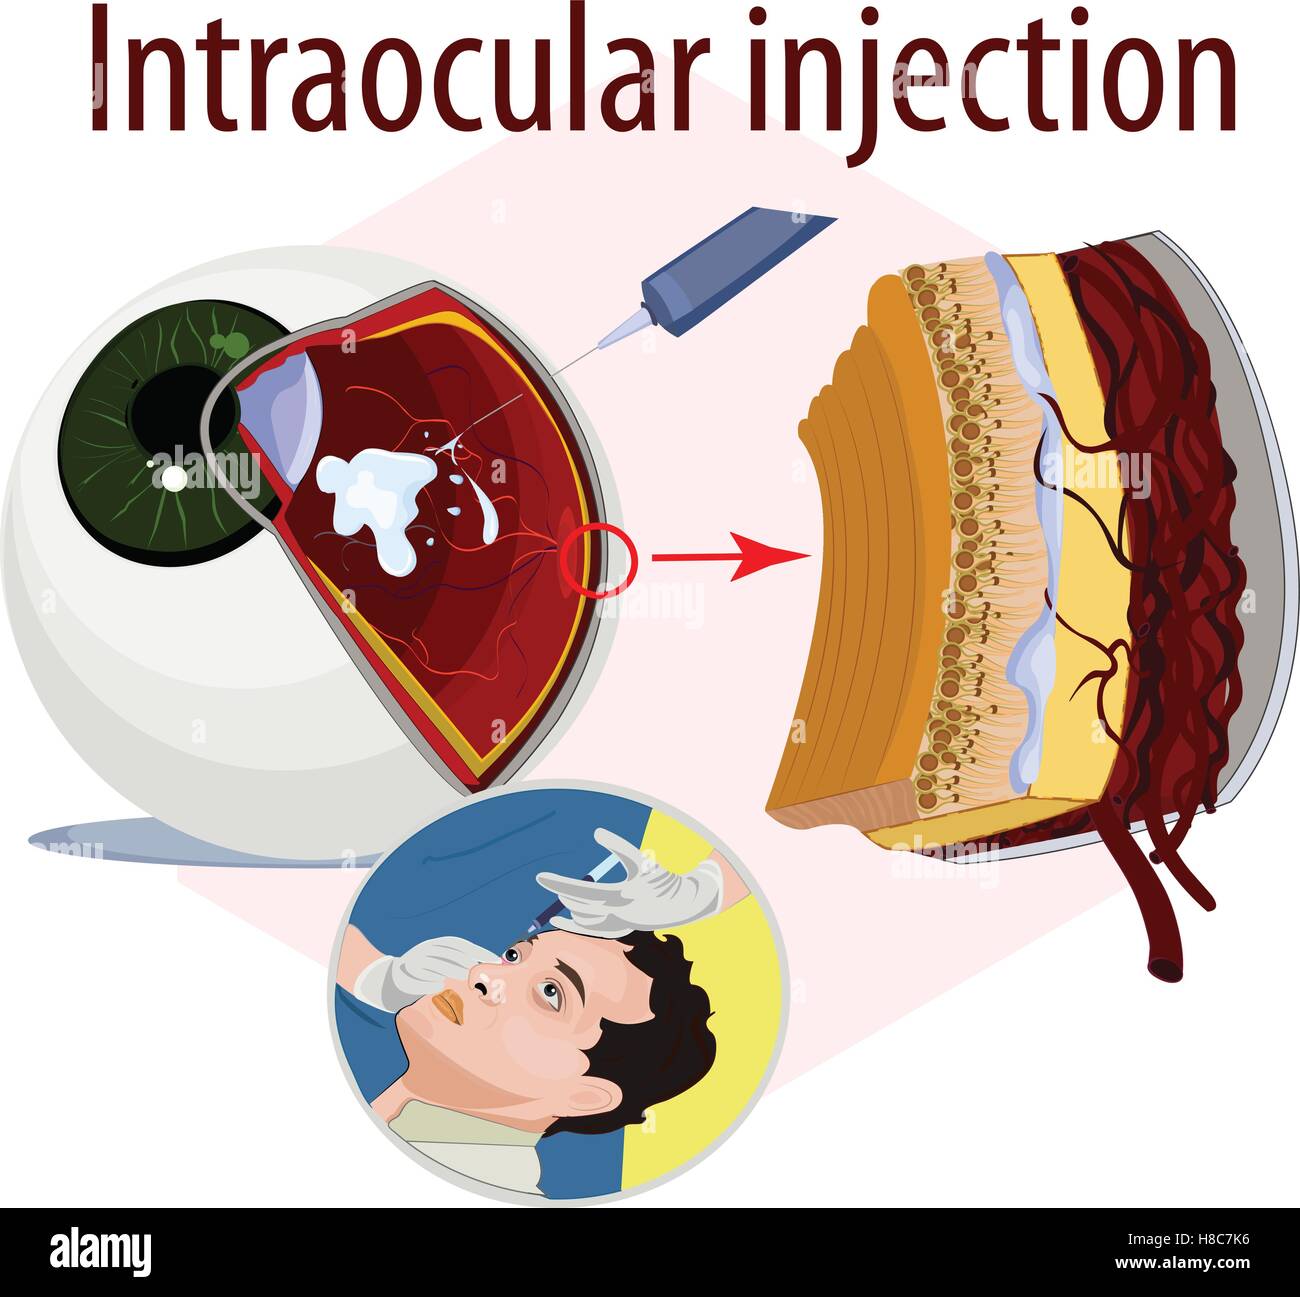 Illustrazione Vettoriale di iniezione intraoculare. Illustrazione Vettoriale